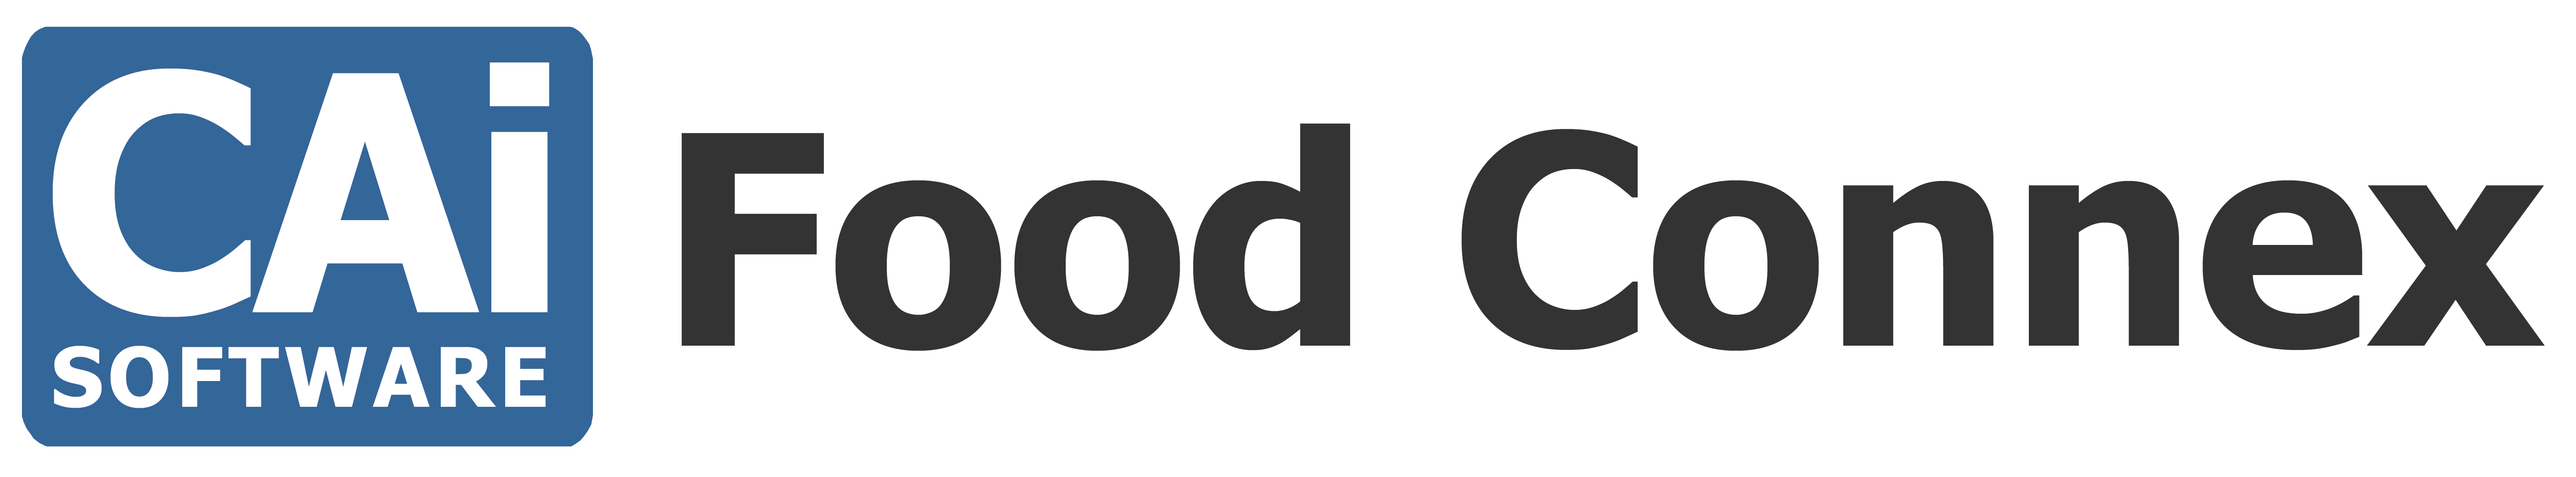 clover-connect-logo